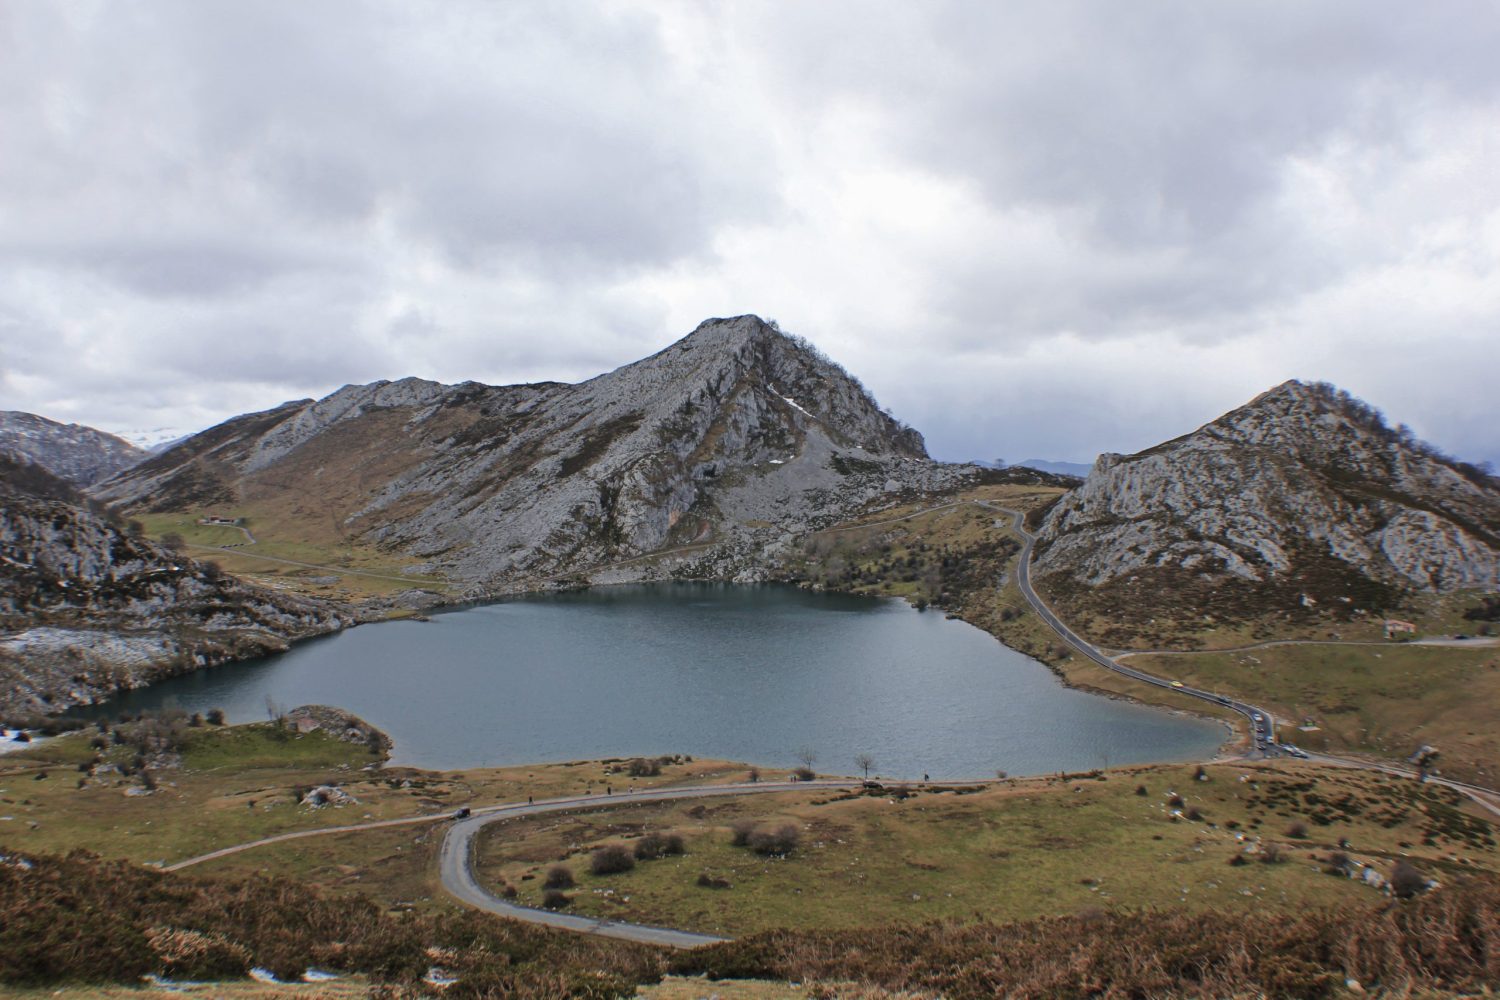 Lagos de Covadonga, los rincones más bonitos de Asturias